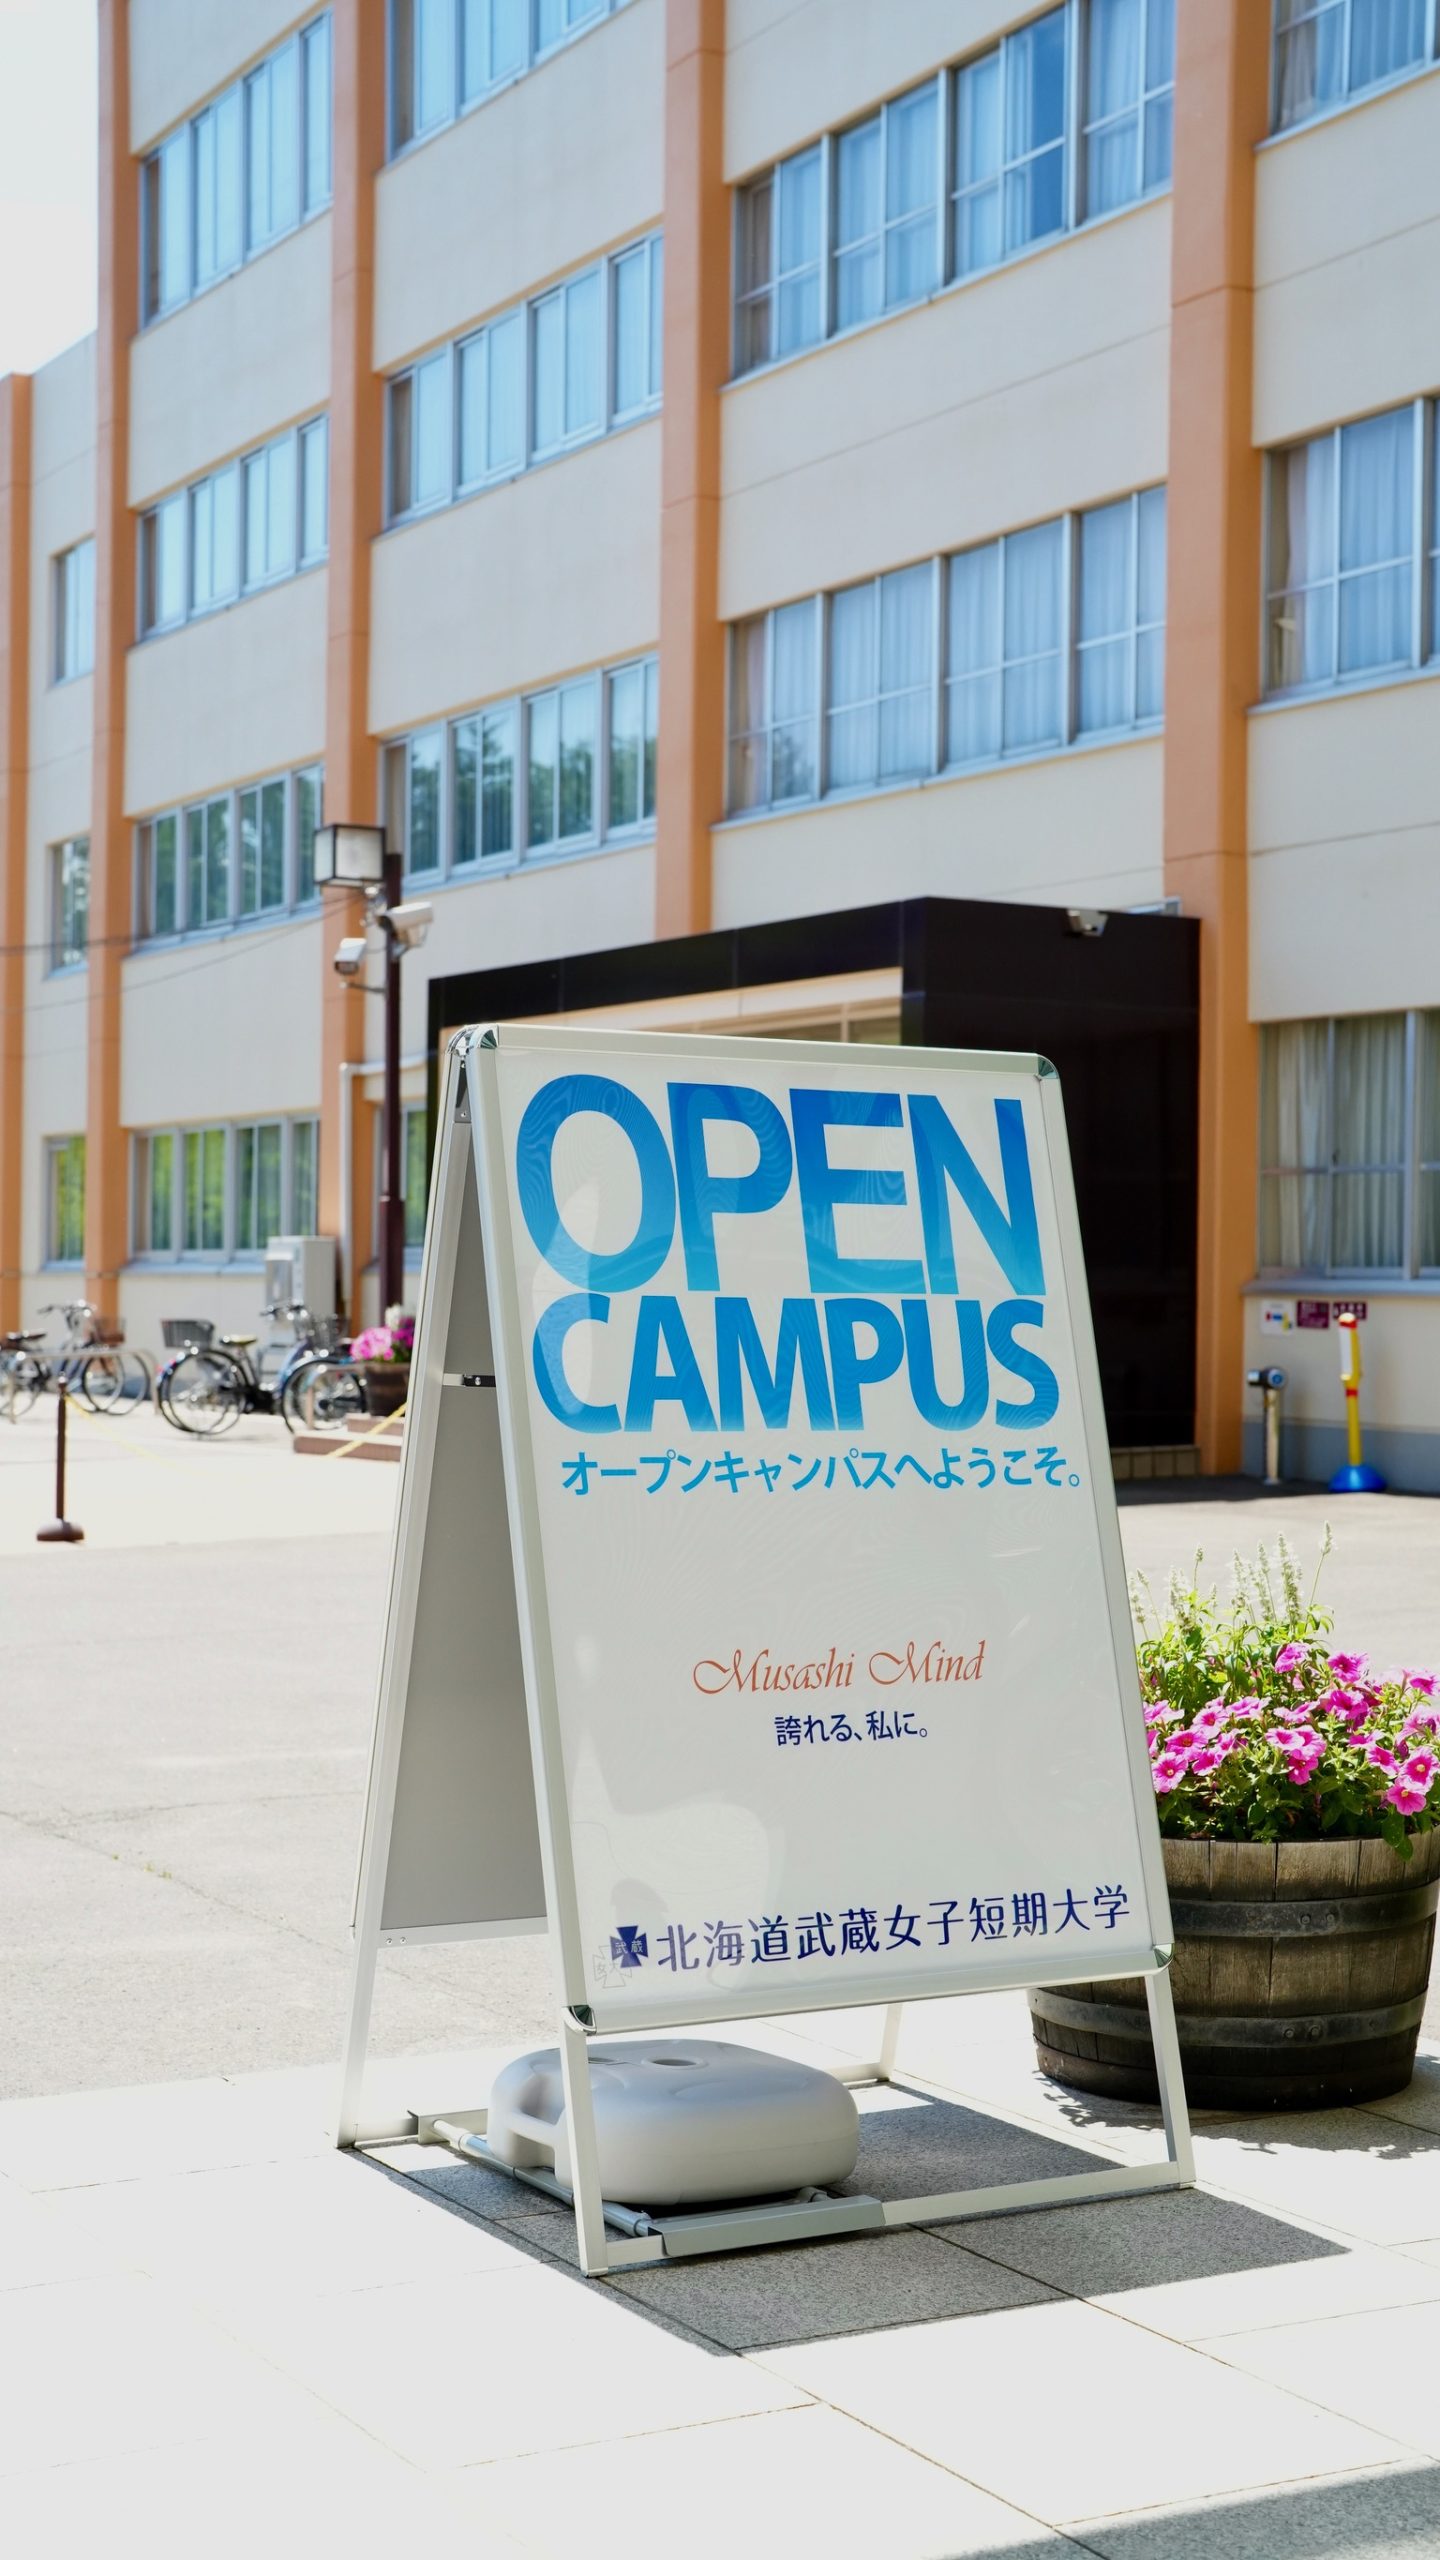 オープンキャンパス開催のお知らせ【8月6日(日)・7日(月)】